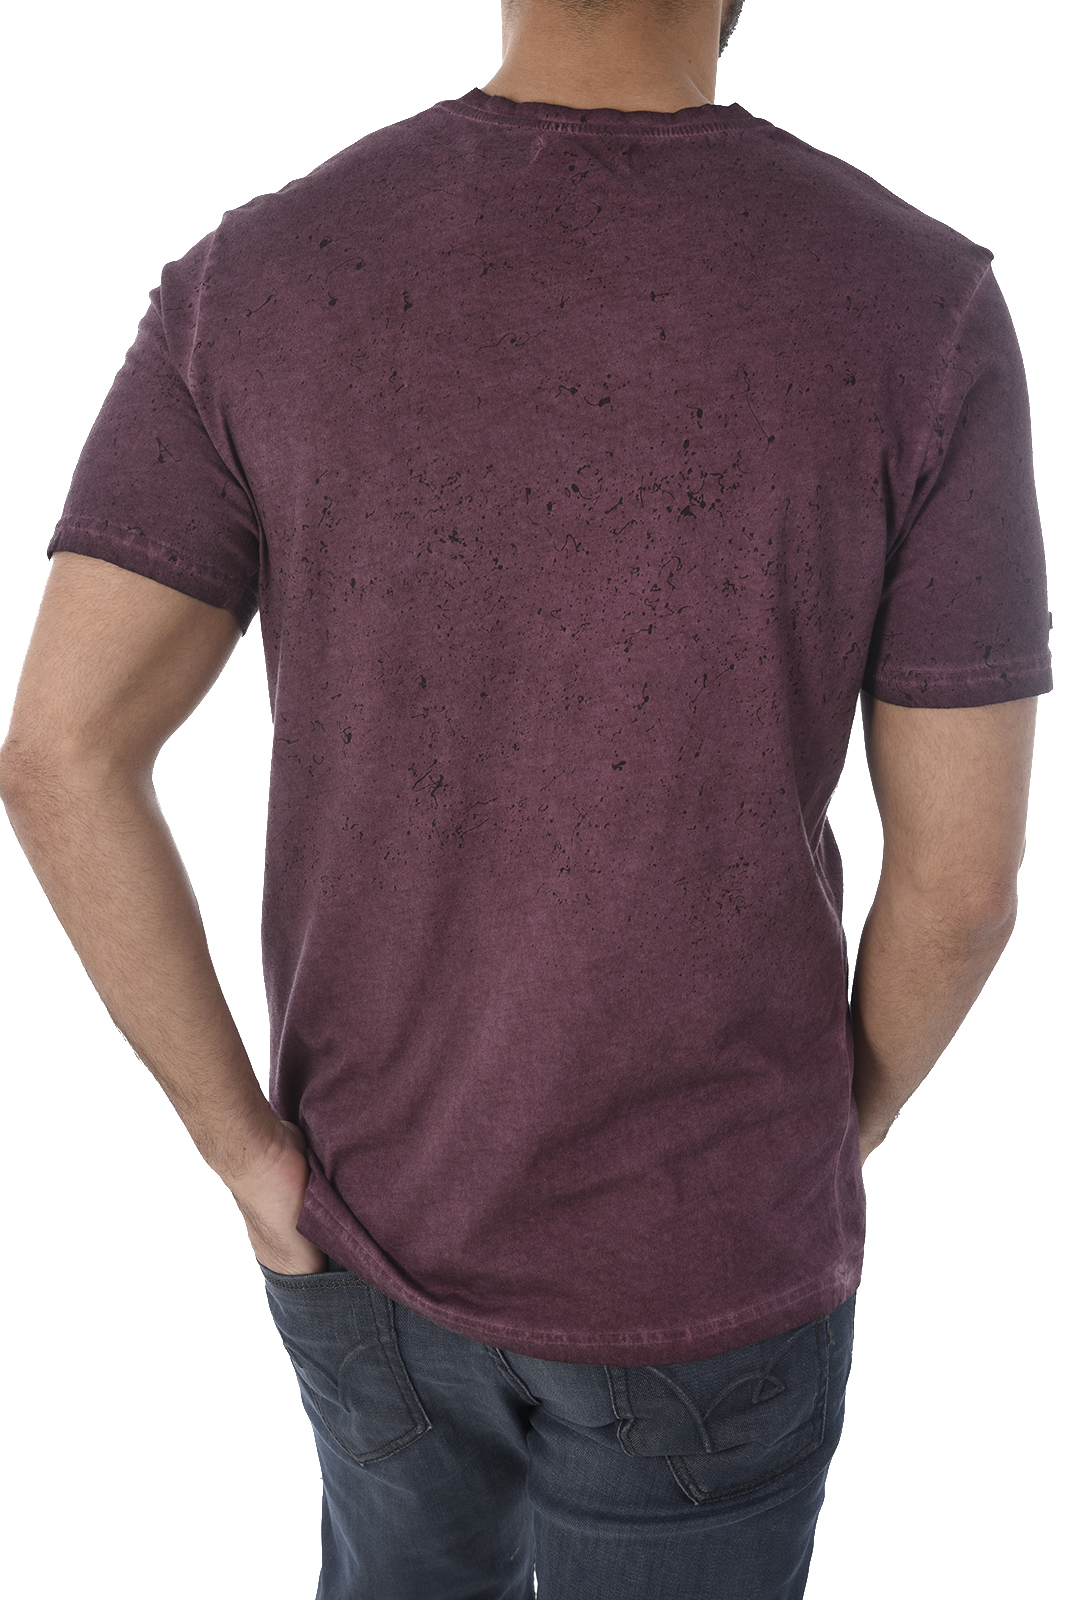 T-Shirt violet Homme - Kaporal Dan